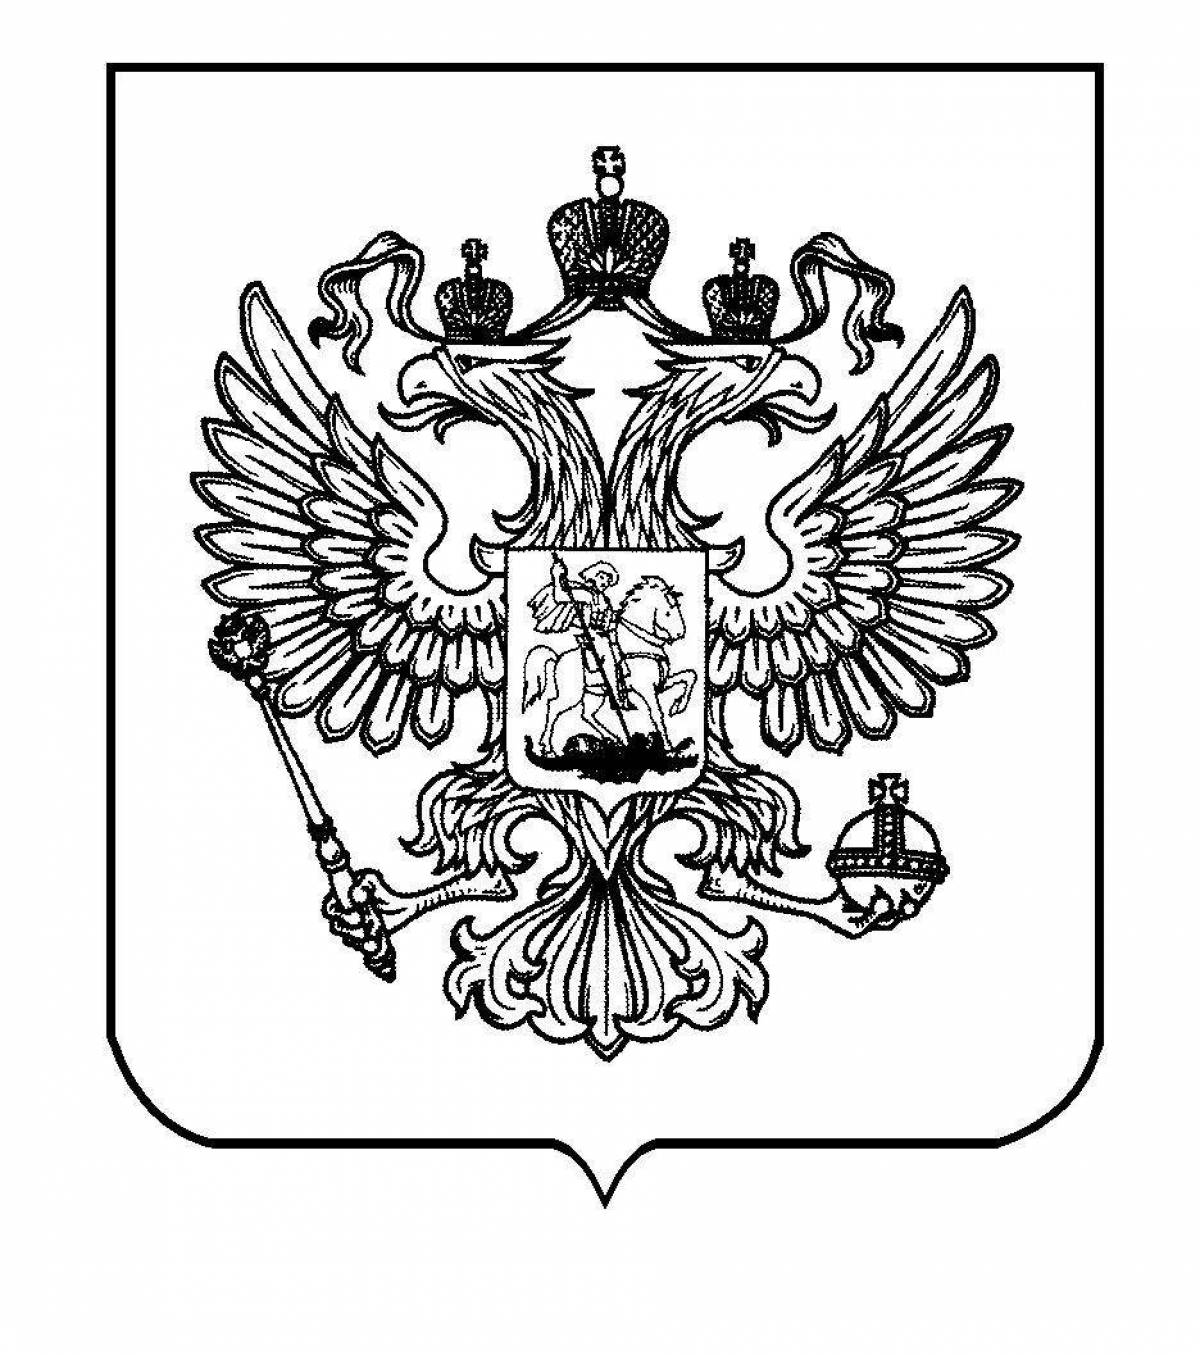 Joyful coat of arms of russia for preschoolers